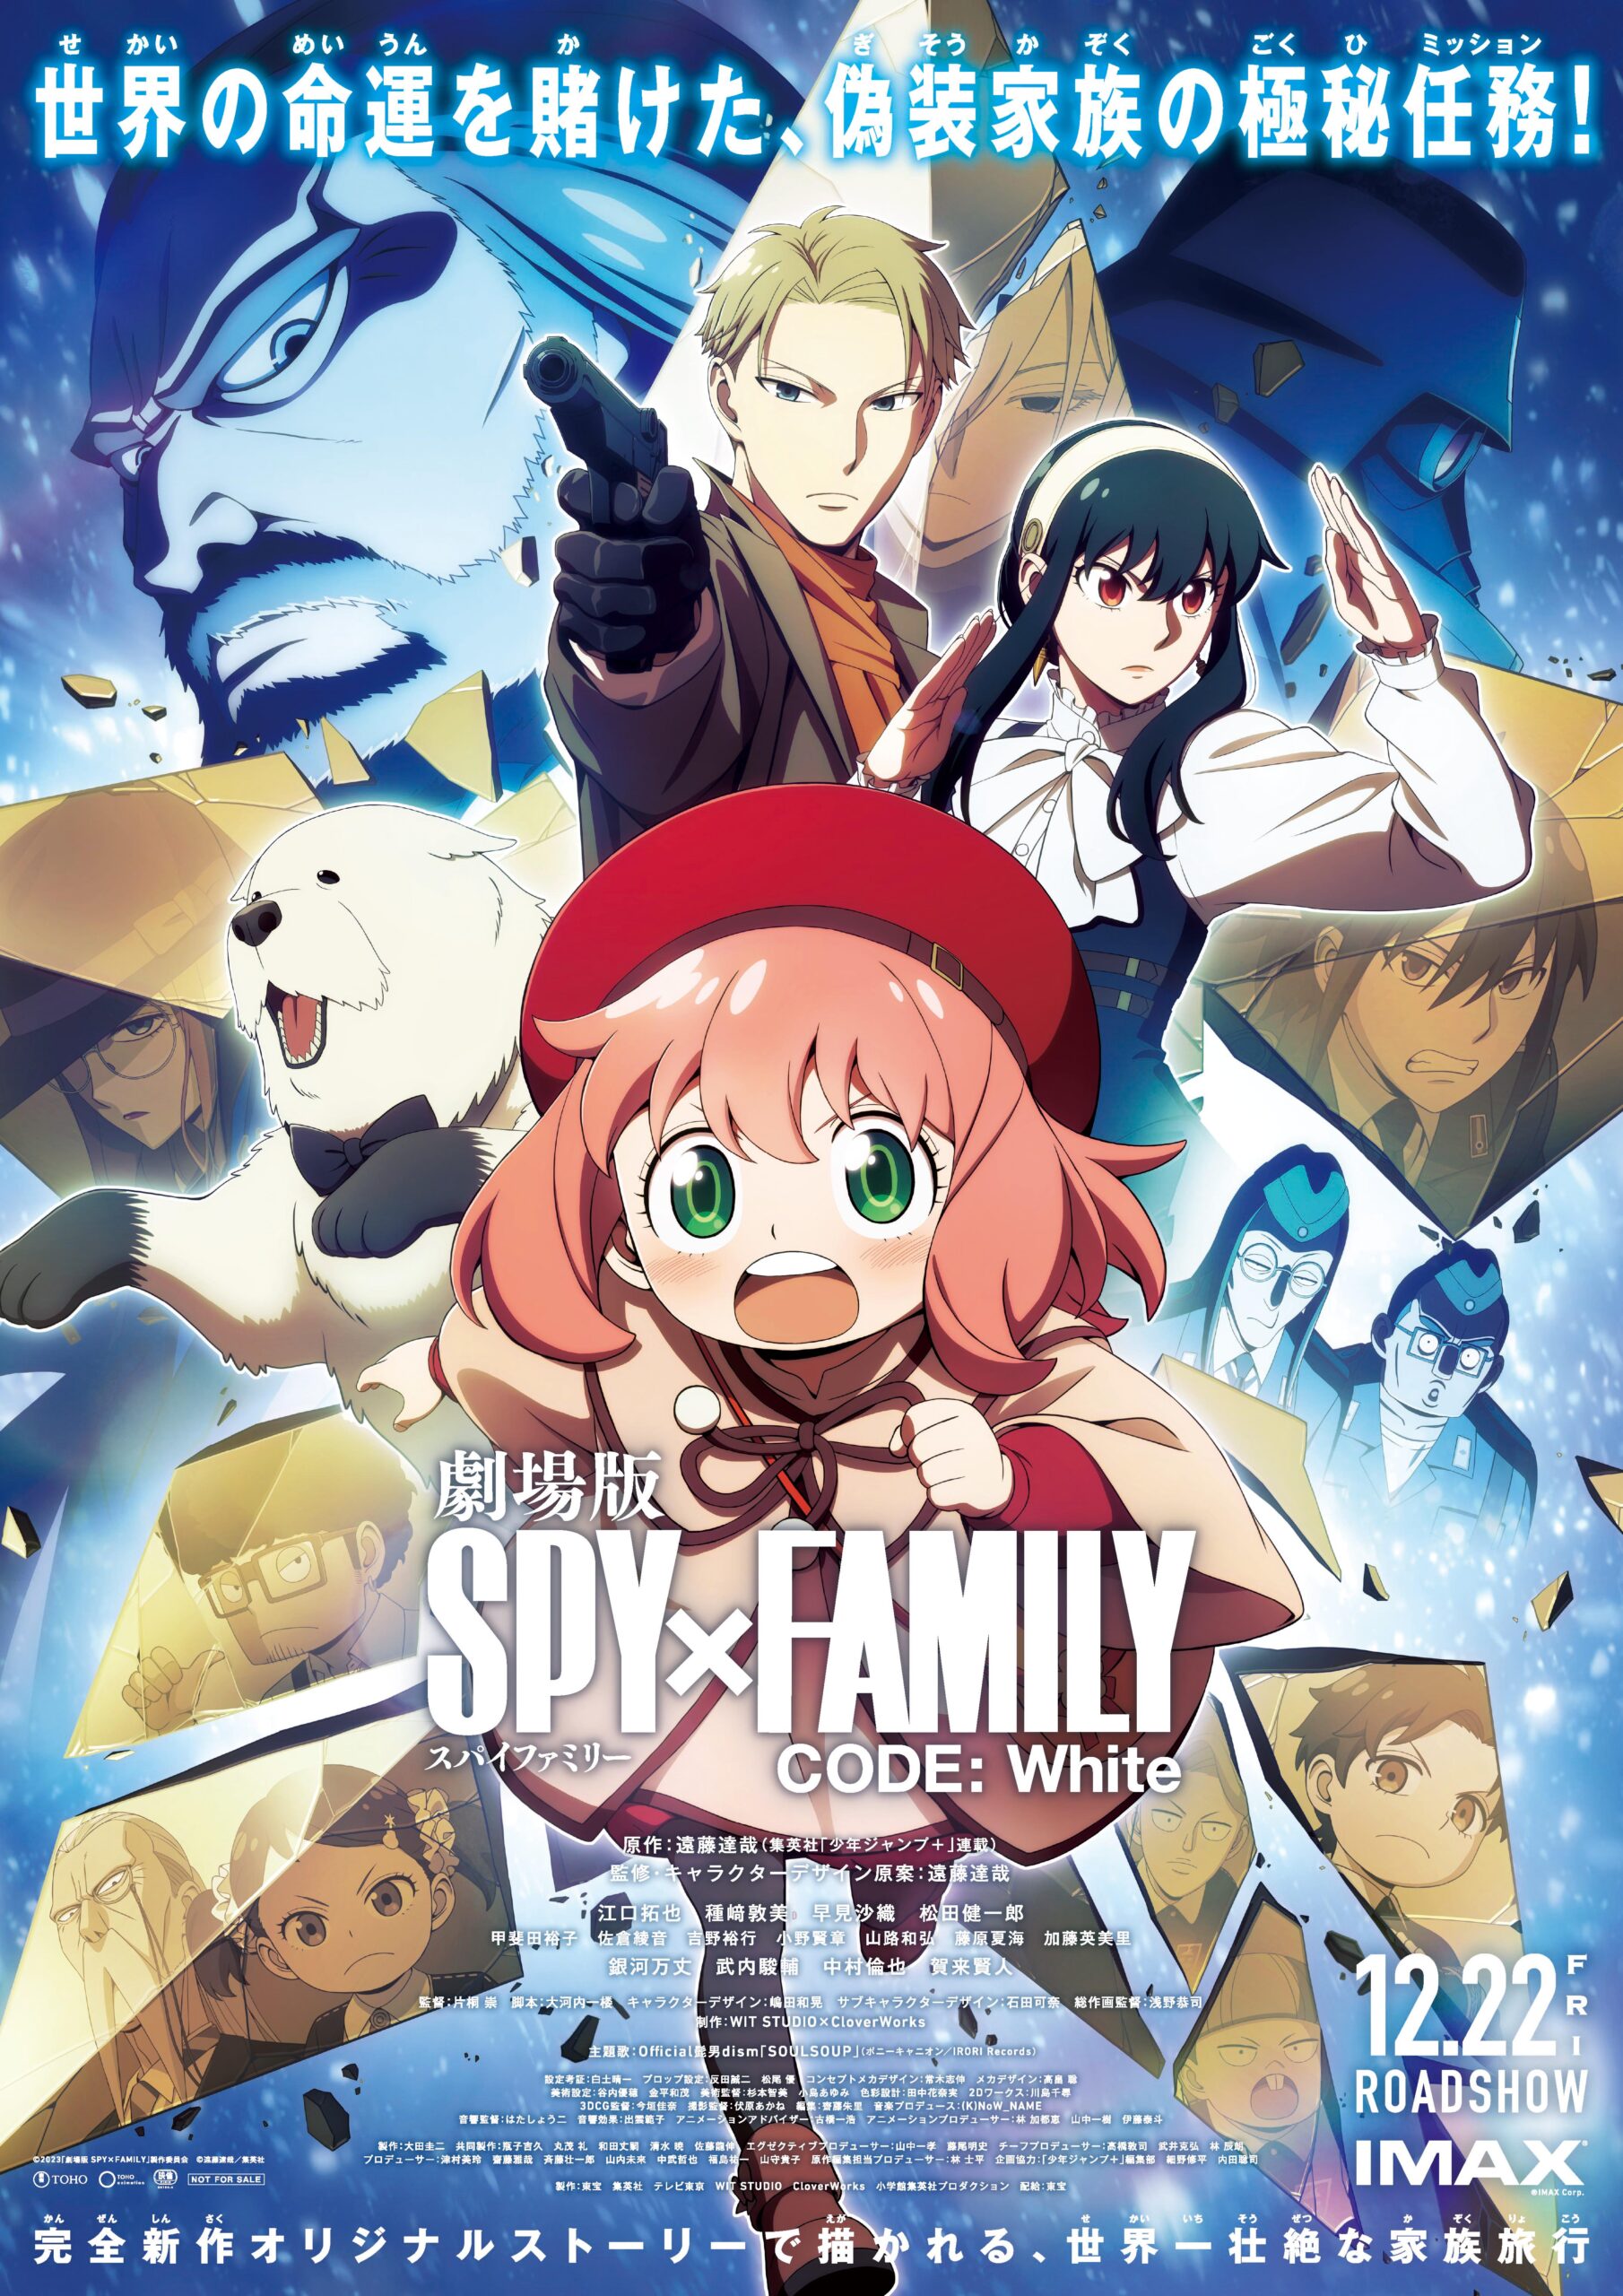 『劇場版 SPY×FAMILY CODE: White』Ｔ・ジョイ東広島で12月22日(金)公開